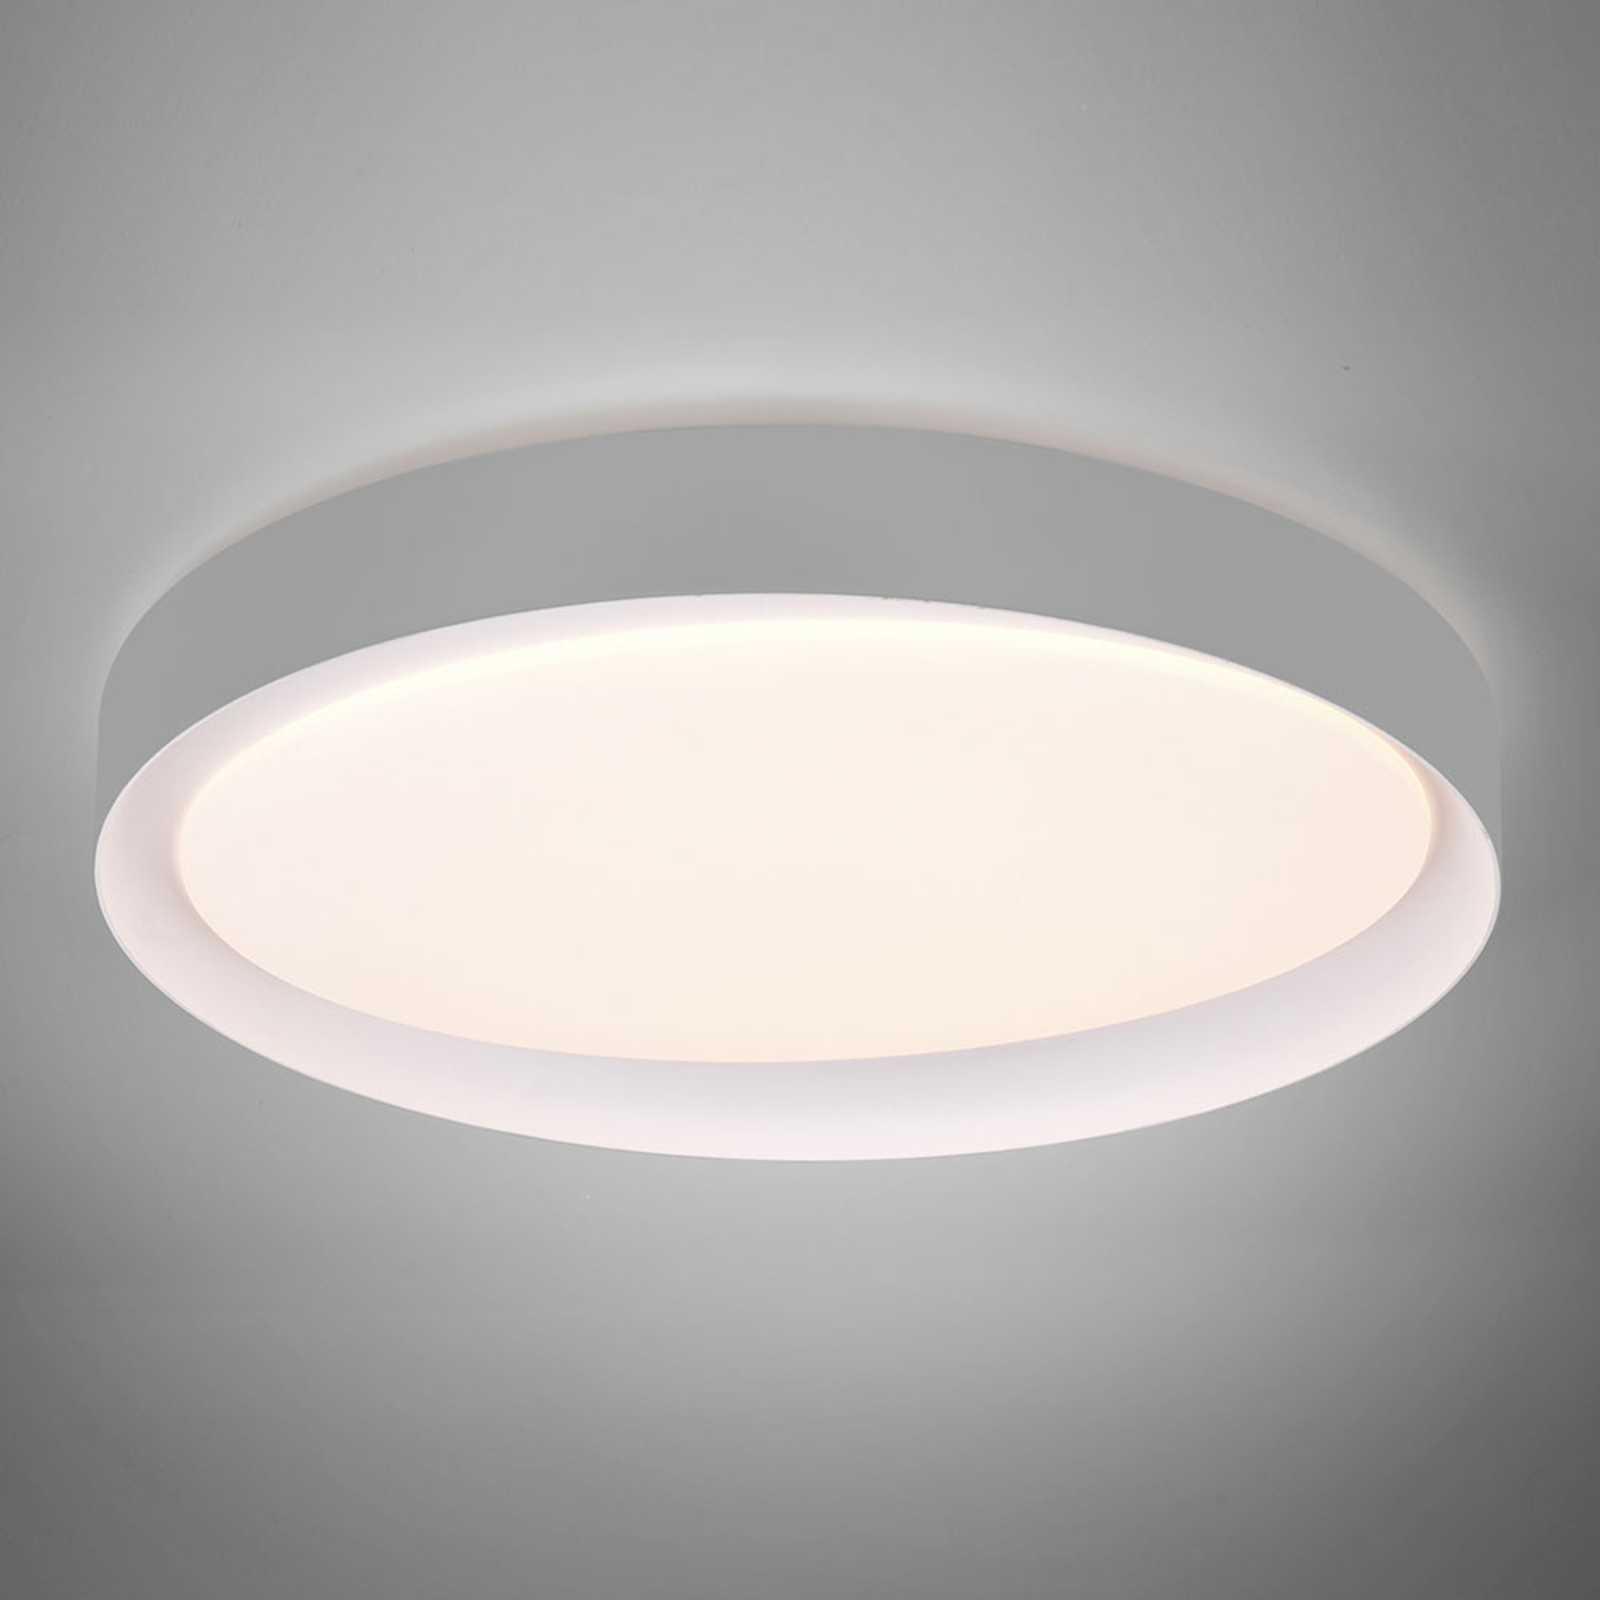 LED-taklampe Zeta, tunable white, grå/hvit